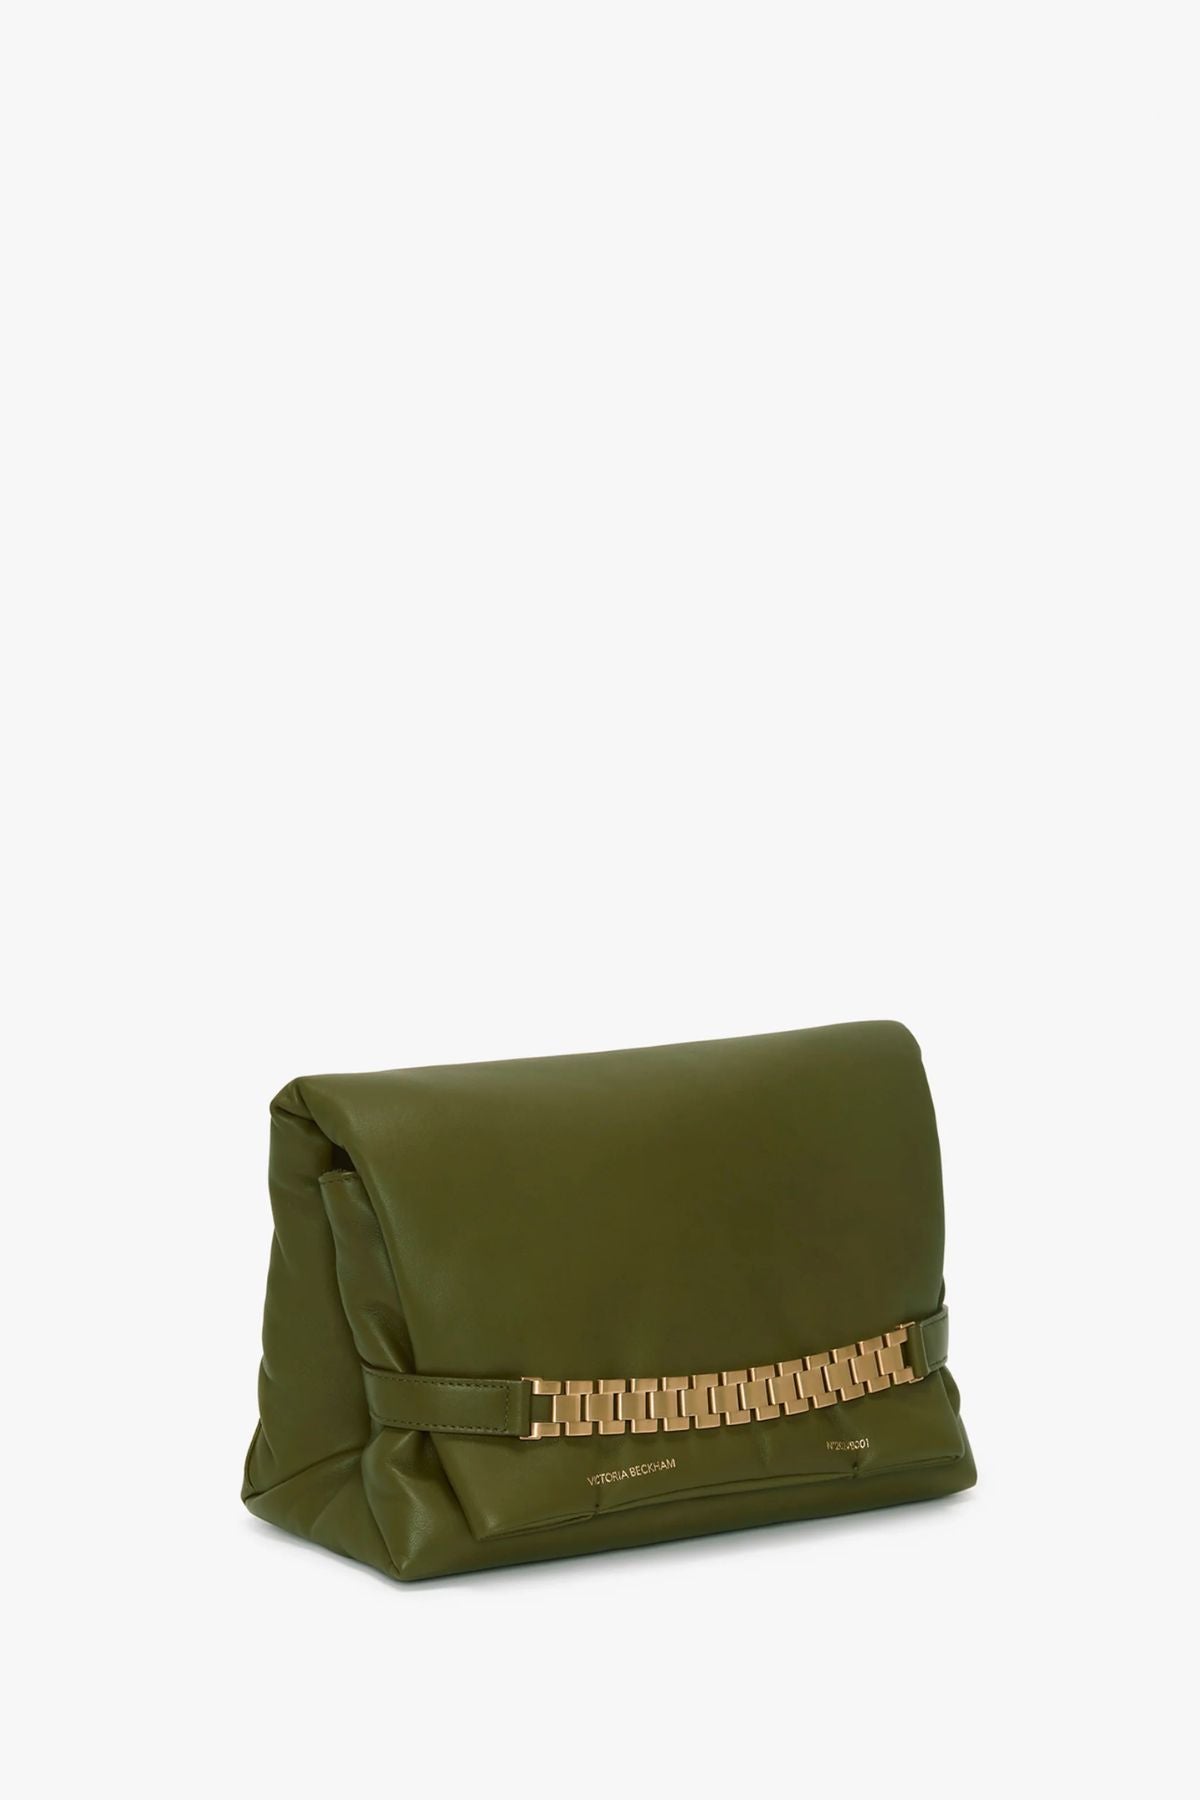 Victoria Beckham Puffy Chain Pouch Bag - Khaki